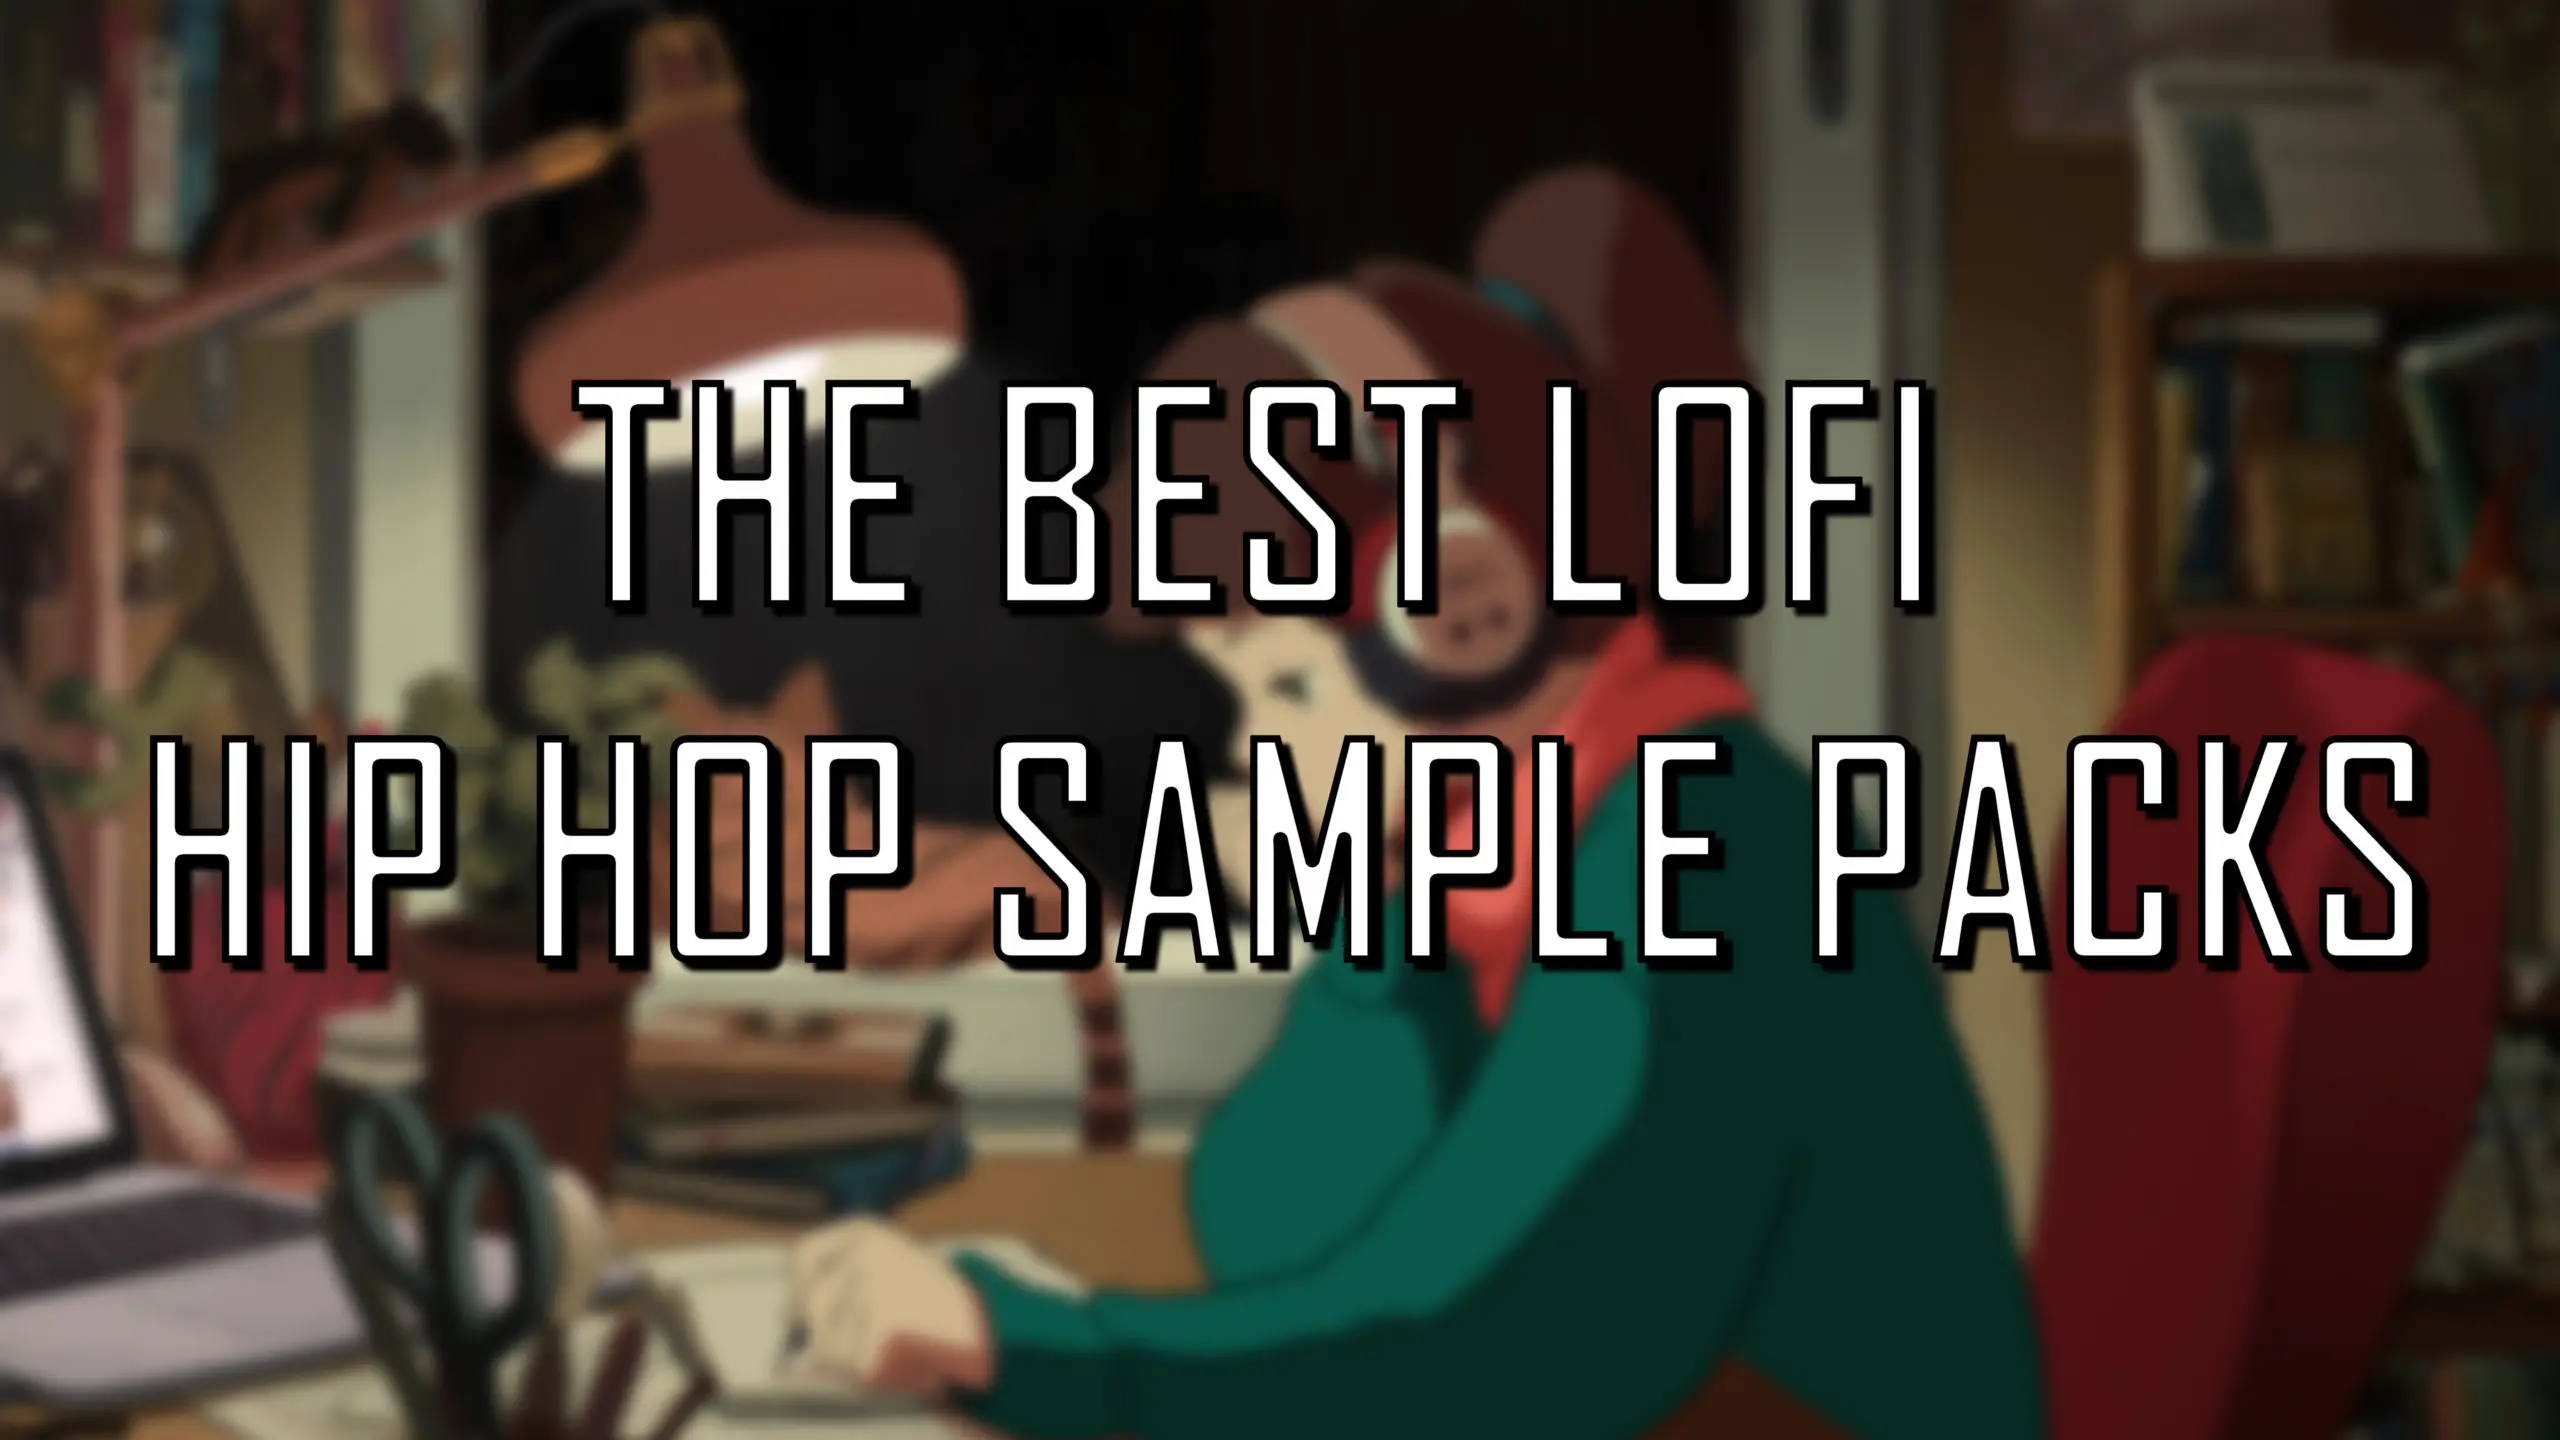 free lofi beat maker